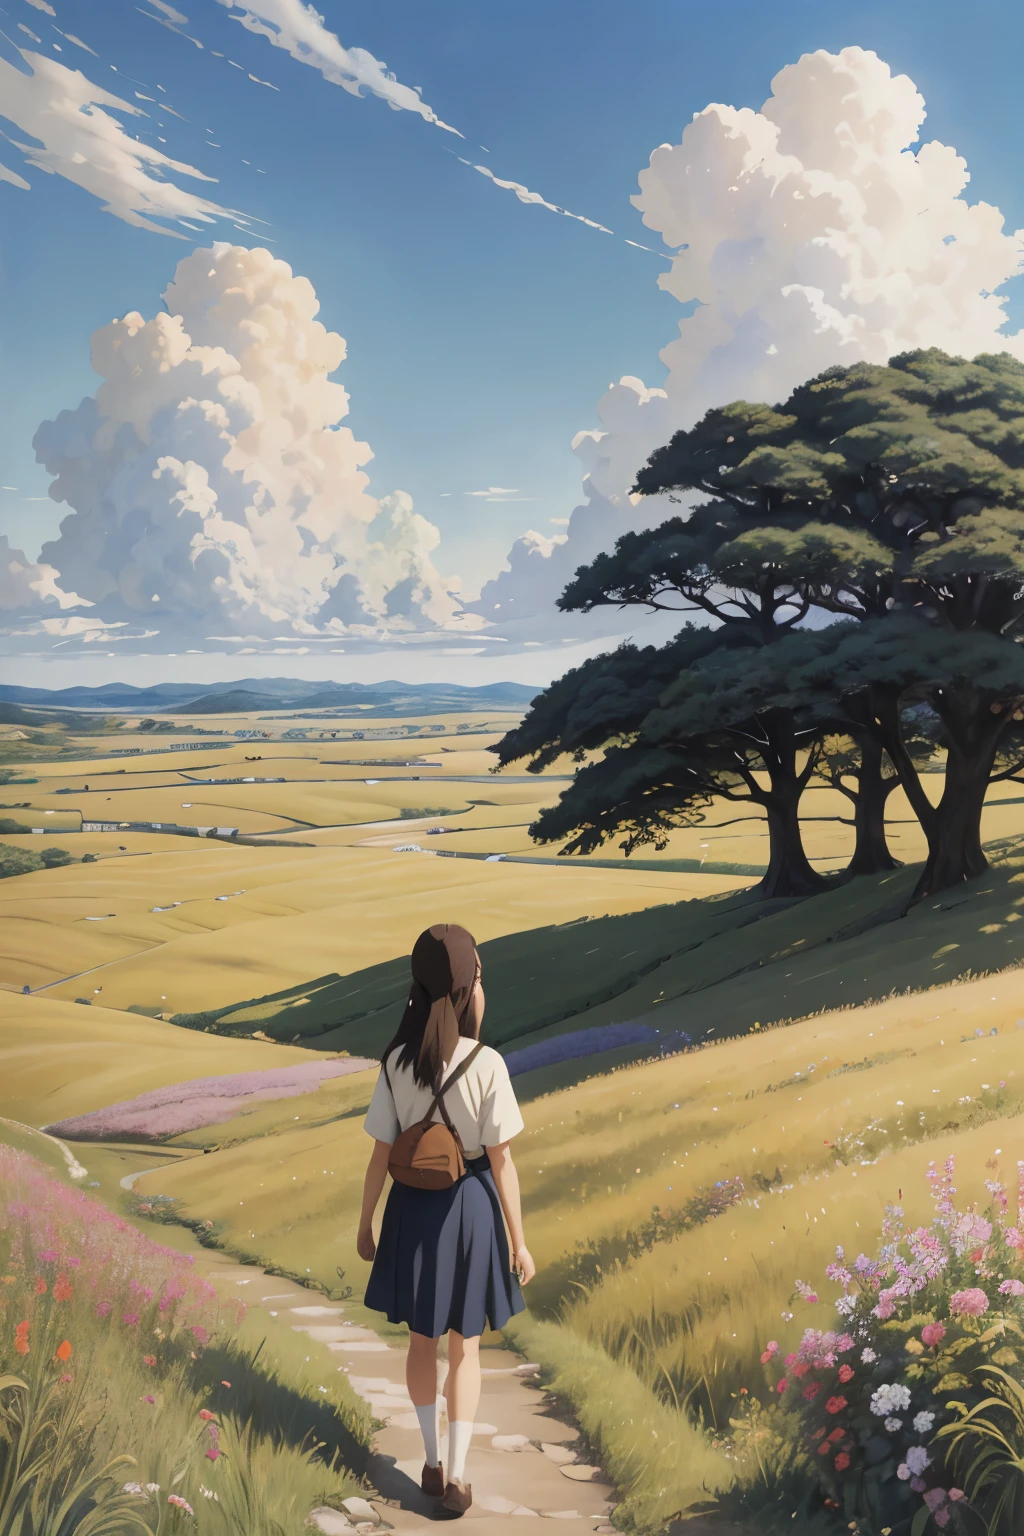 Realista, real, Hermoso e impresionante paisaje pintura al óleo Studio Ghibli Hayao Miyazaki Pétalos Pastizales Cielo azul Pastizales Camino rural,edificio, hermosa chica